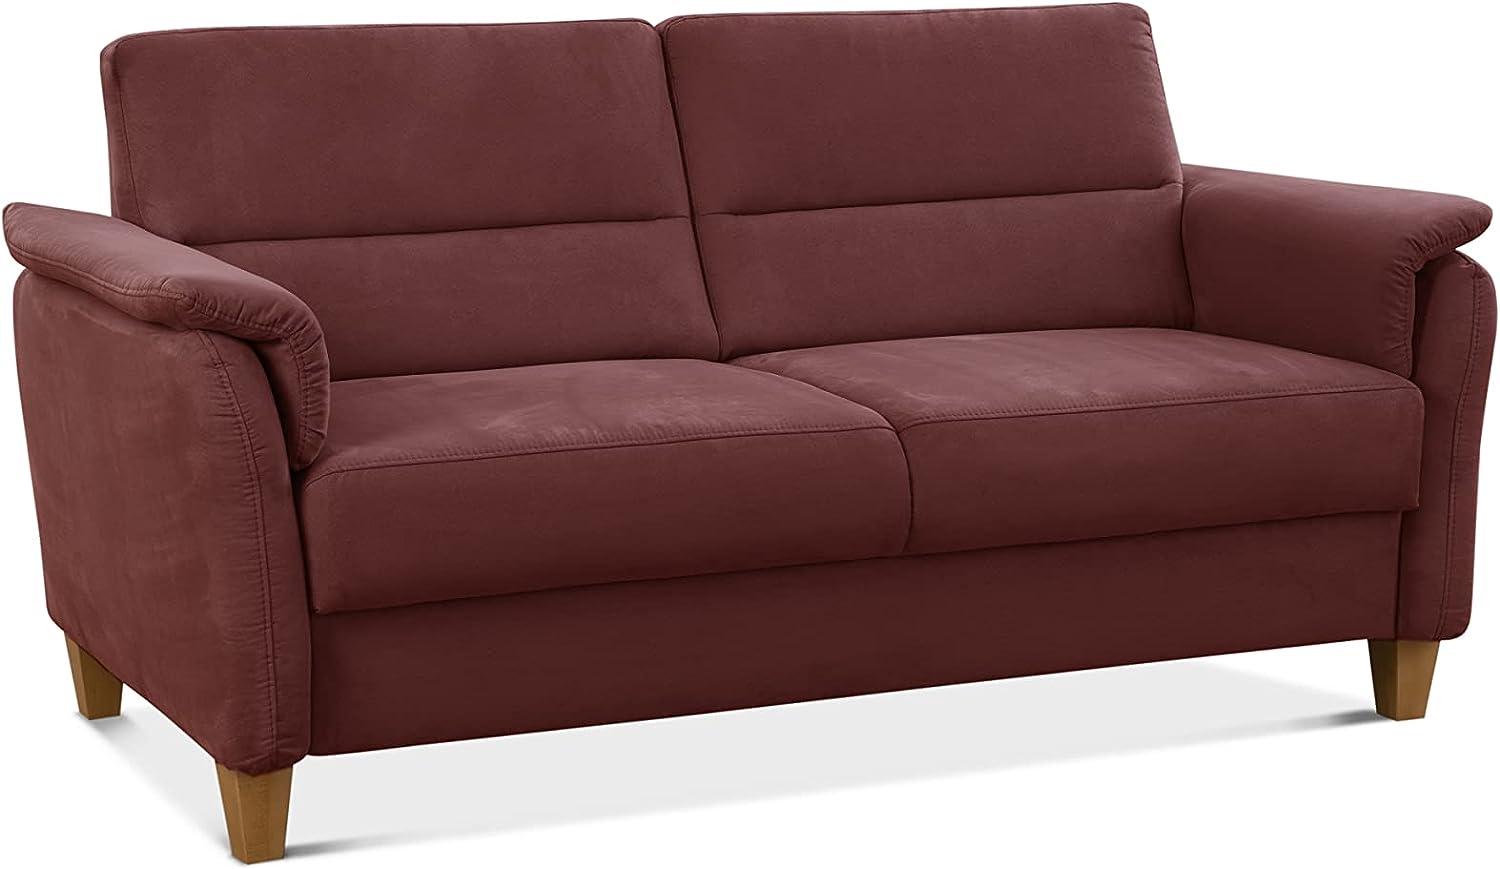 CAVADORE 3er-Sofa Palera mit Federkern / Kompakte Dreisitzer-Couch im Landhaus-Stil / passender Sessel und Hocker optional / 179 x 89 x 89 / Mikrofaser, Rot Bild 1